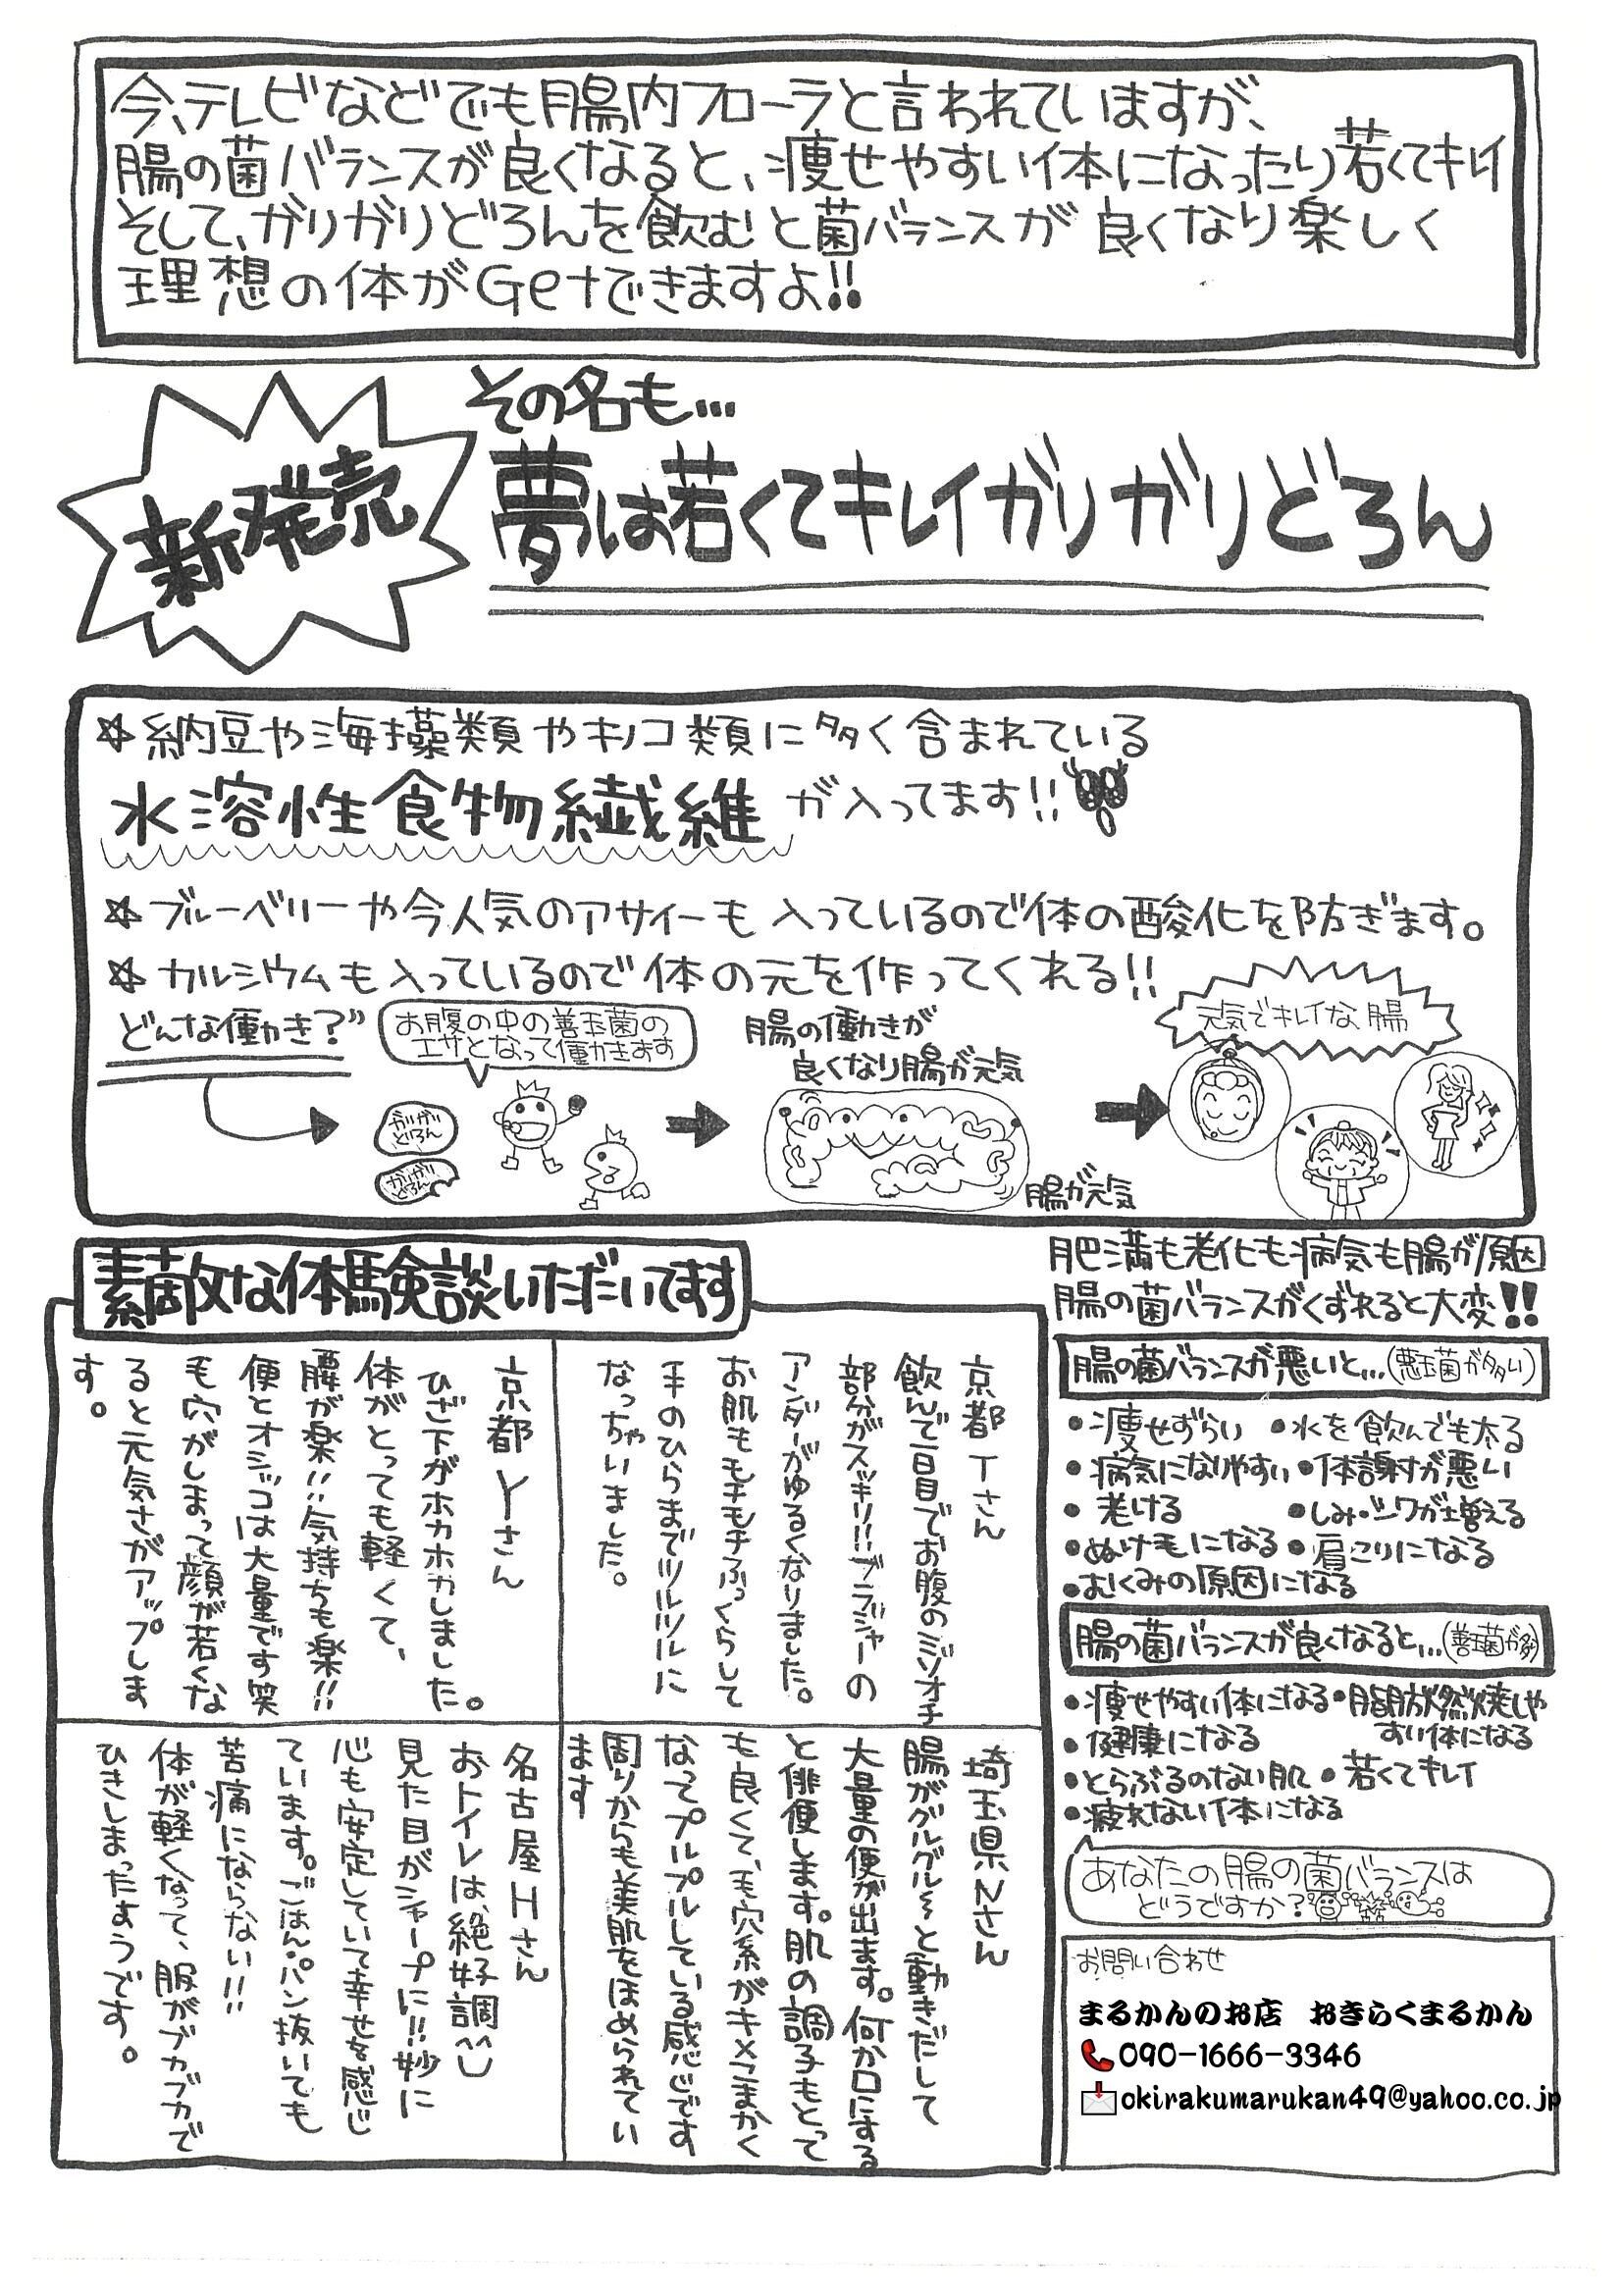 銀座まるかん ガリガリどろん 5.5g×93包入 - 通販 - www.minproff.cm